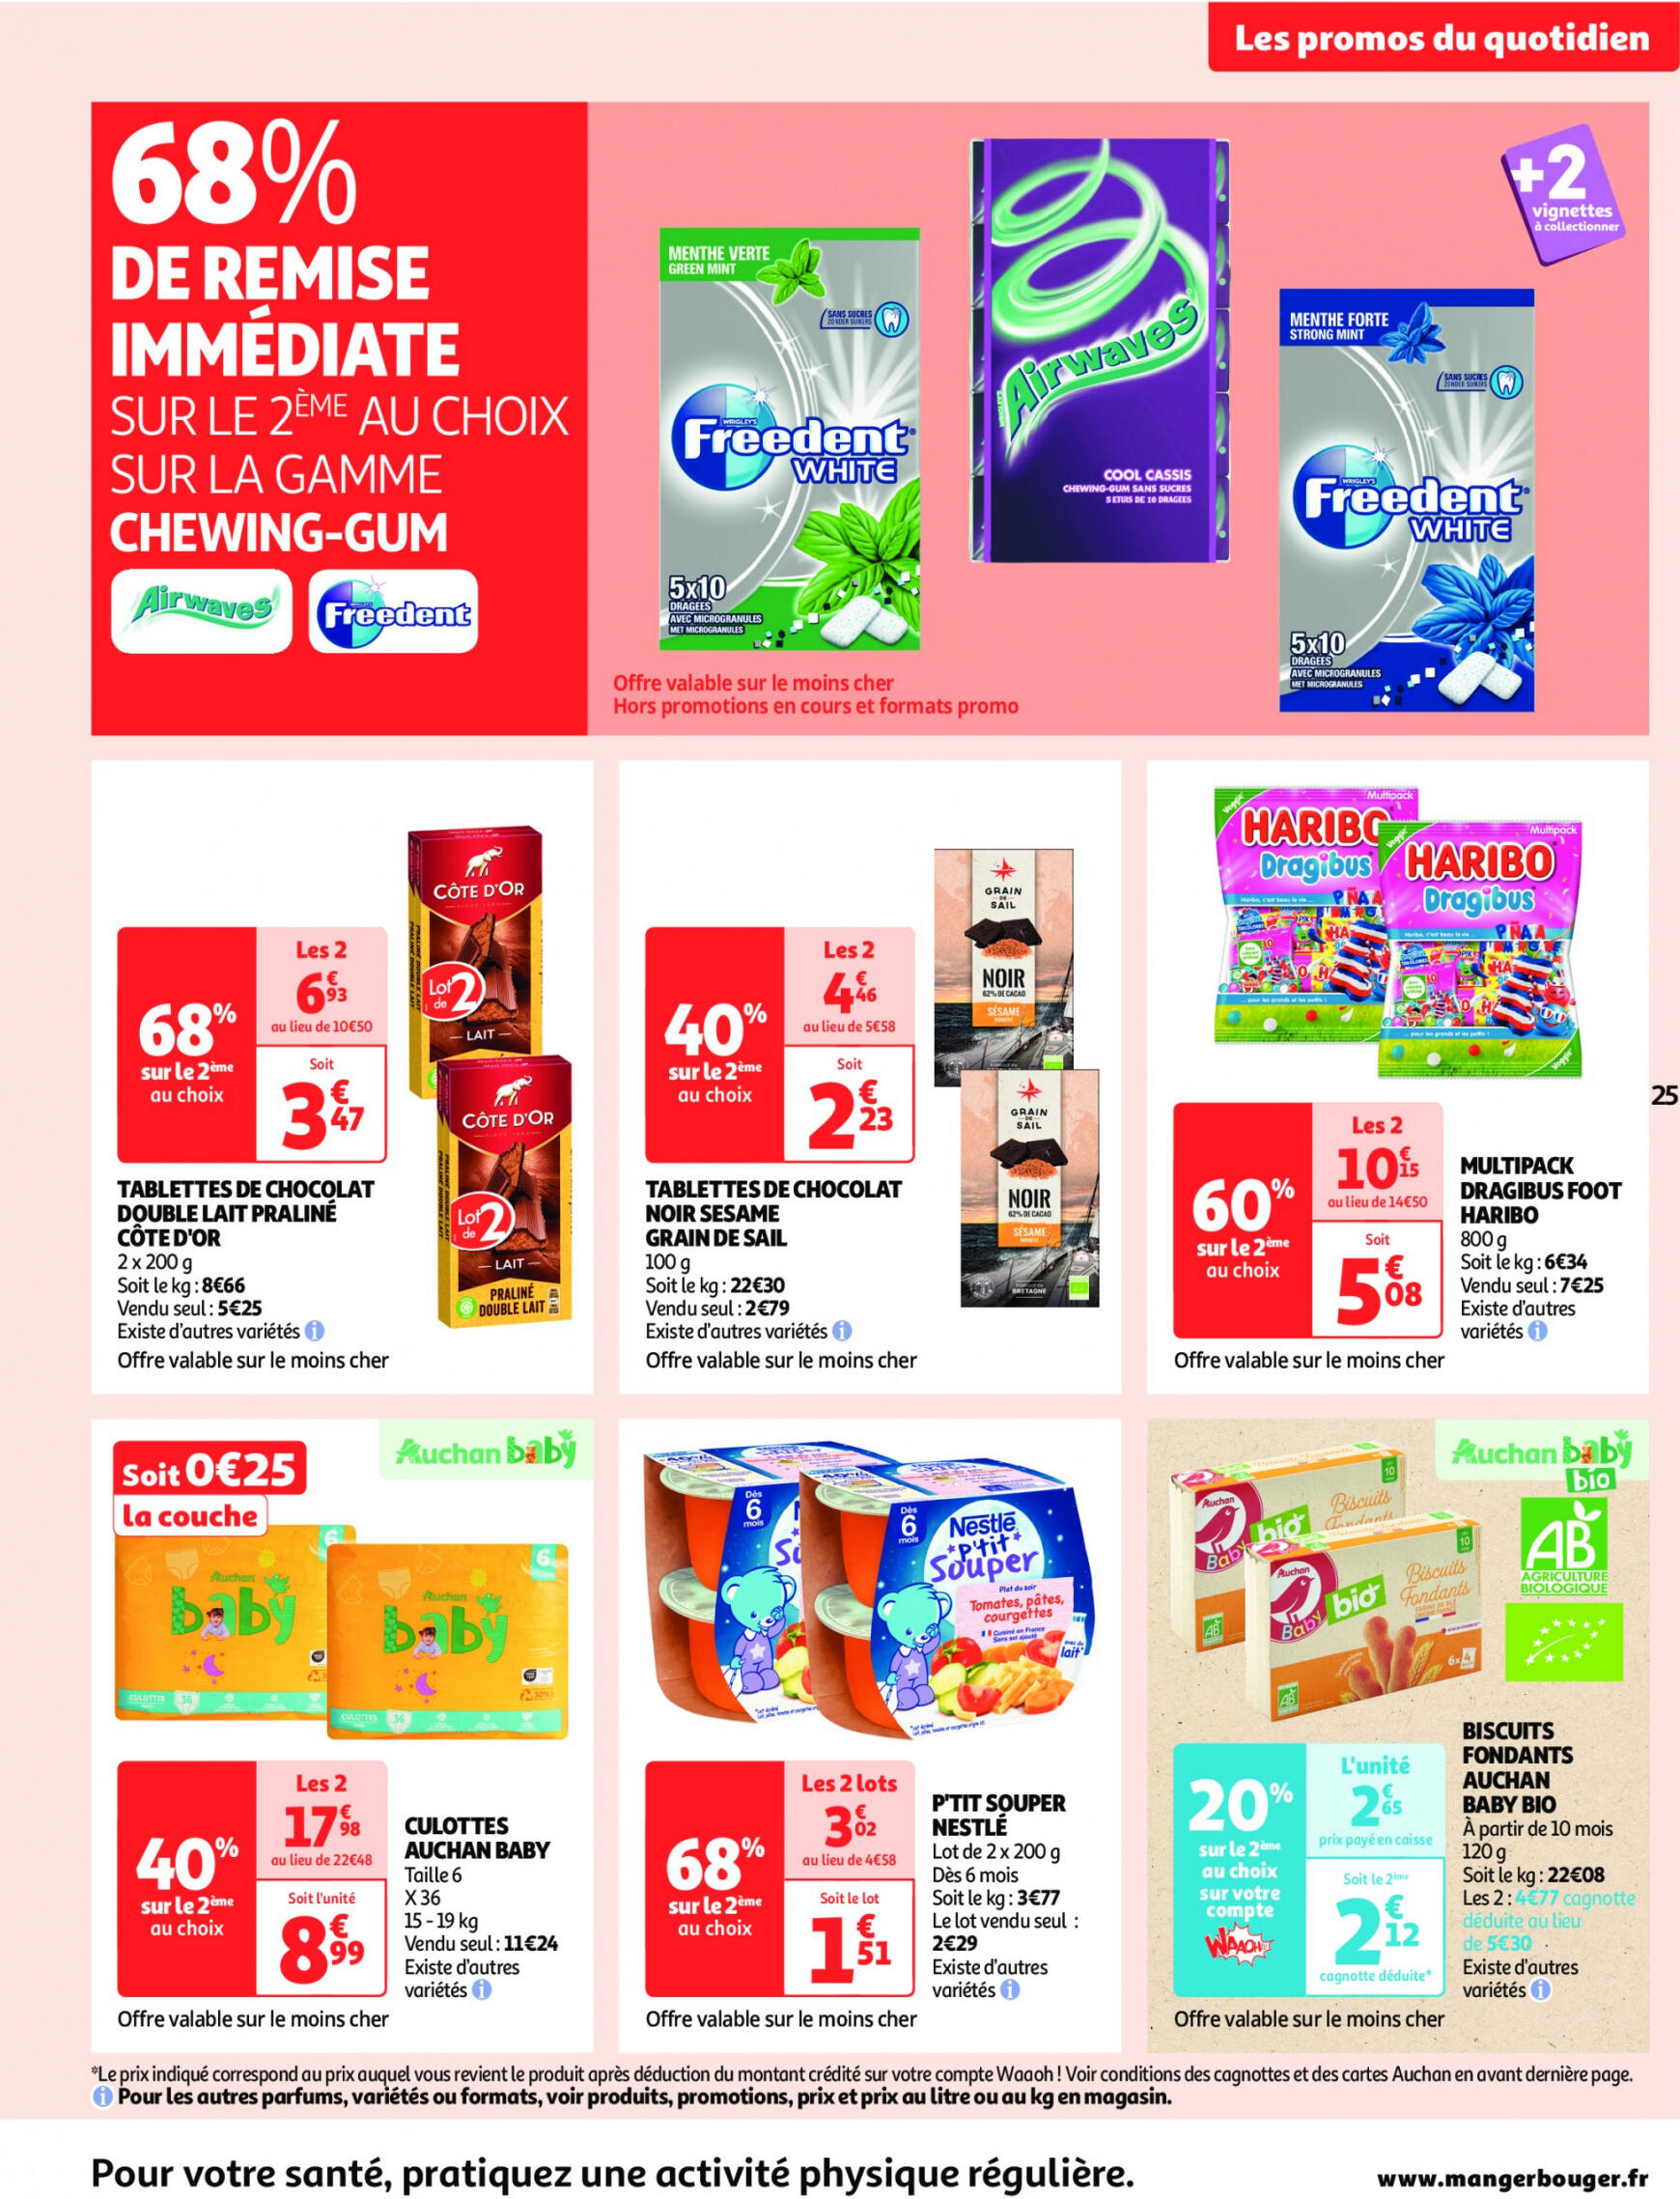 auchan - Auchan supermarché - Faites le plein de bonnes affaires folder huidig 22.05. - 26.05. - page: 25